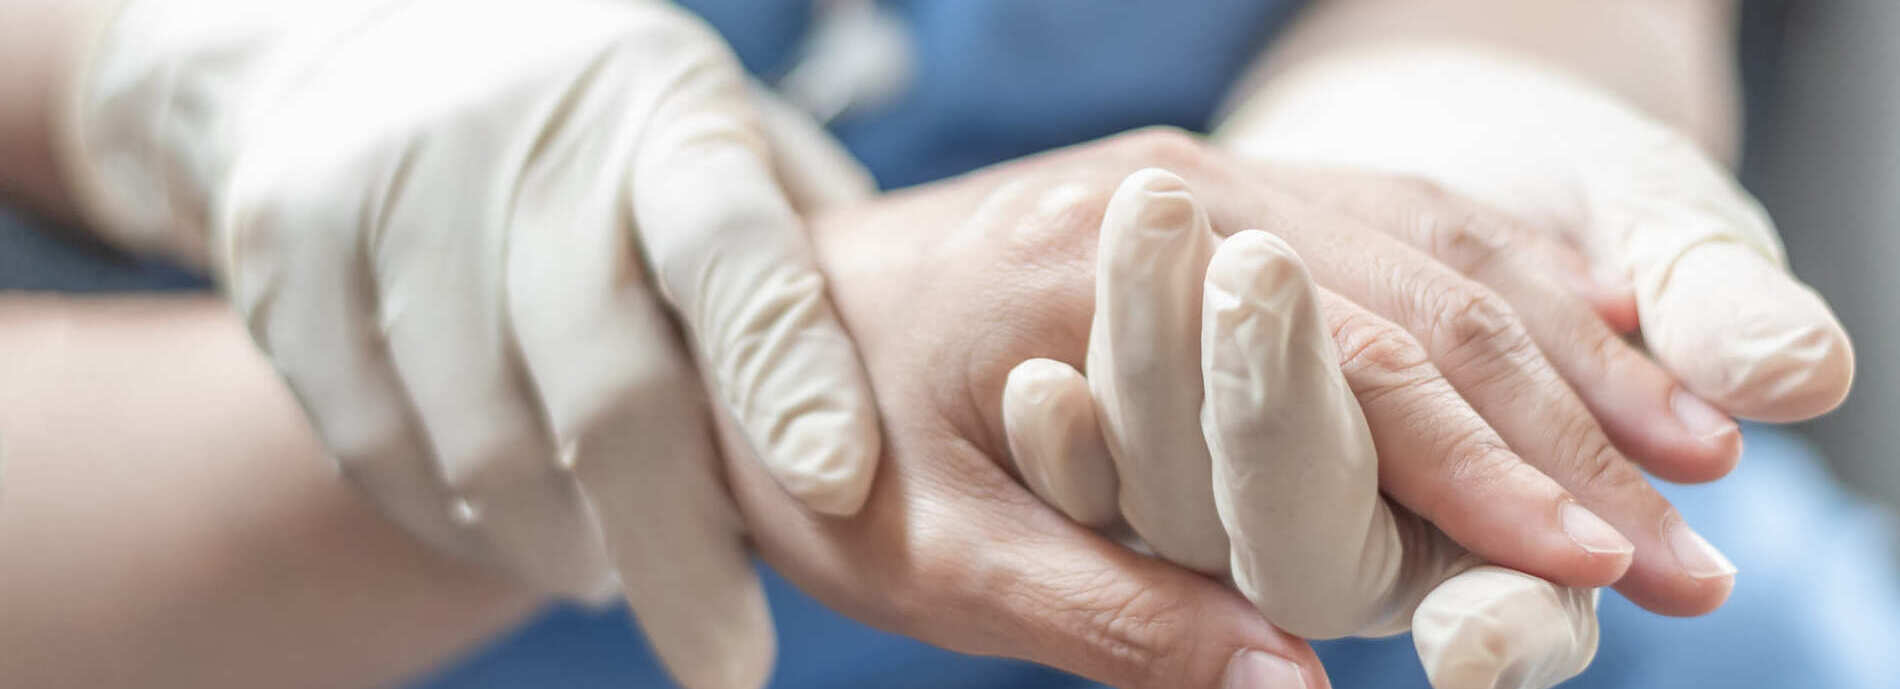 Traiter un kyste mucoïde du doigt - Dr Thong - chirurgien de la main à